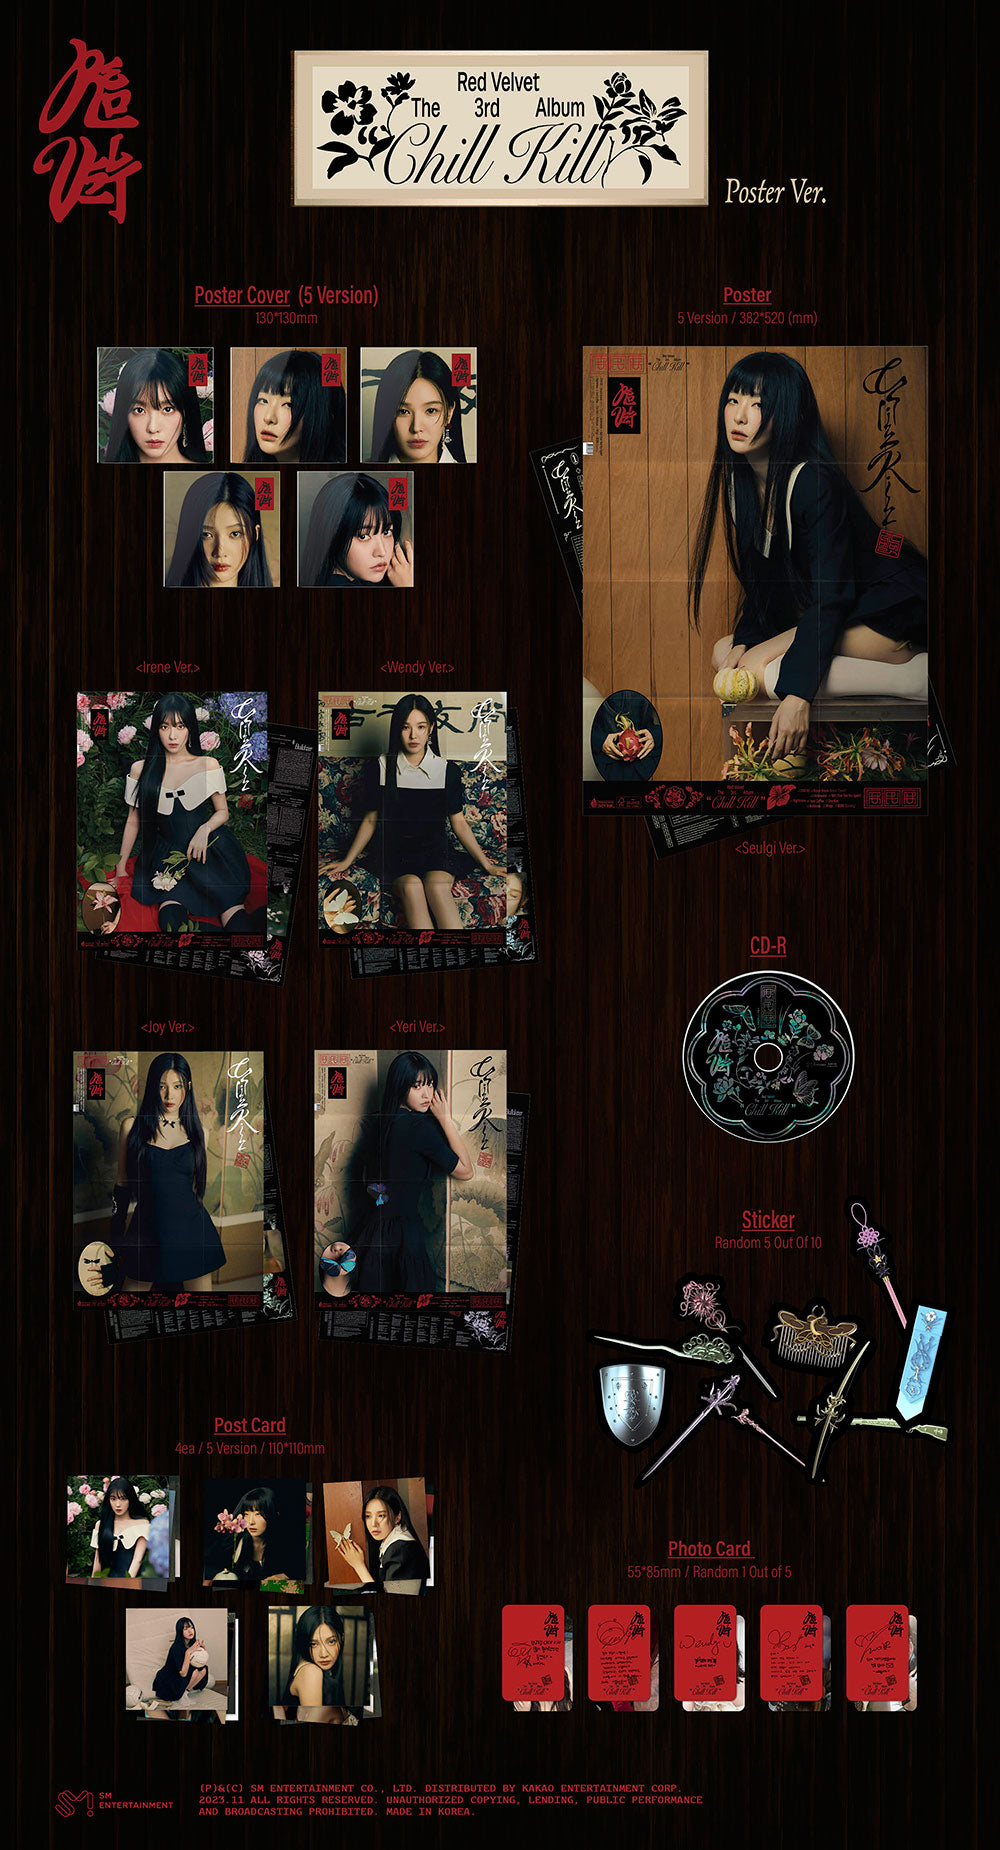 Red Velvet - 3RD ALBUM [Chill Kill] Poster Ver.